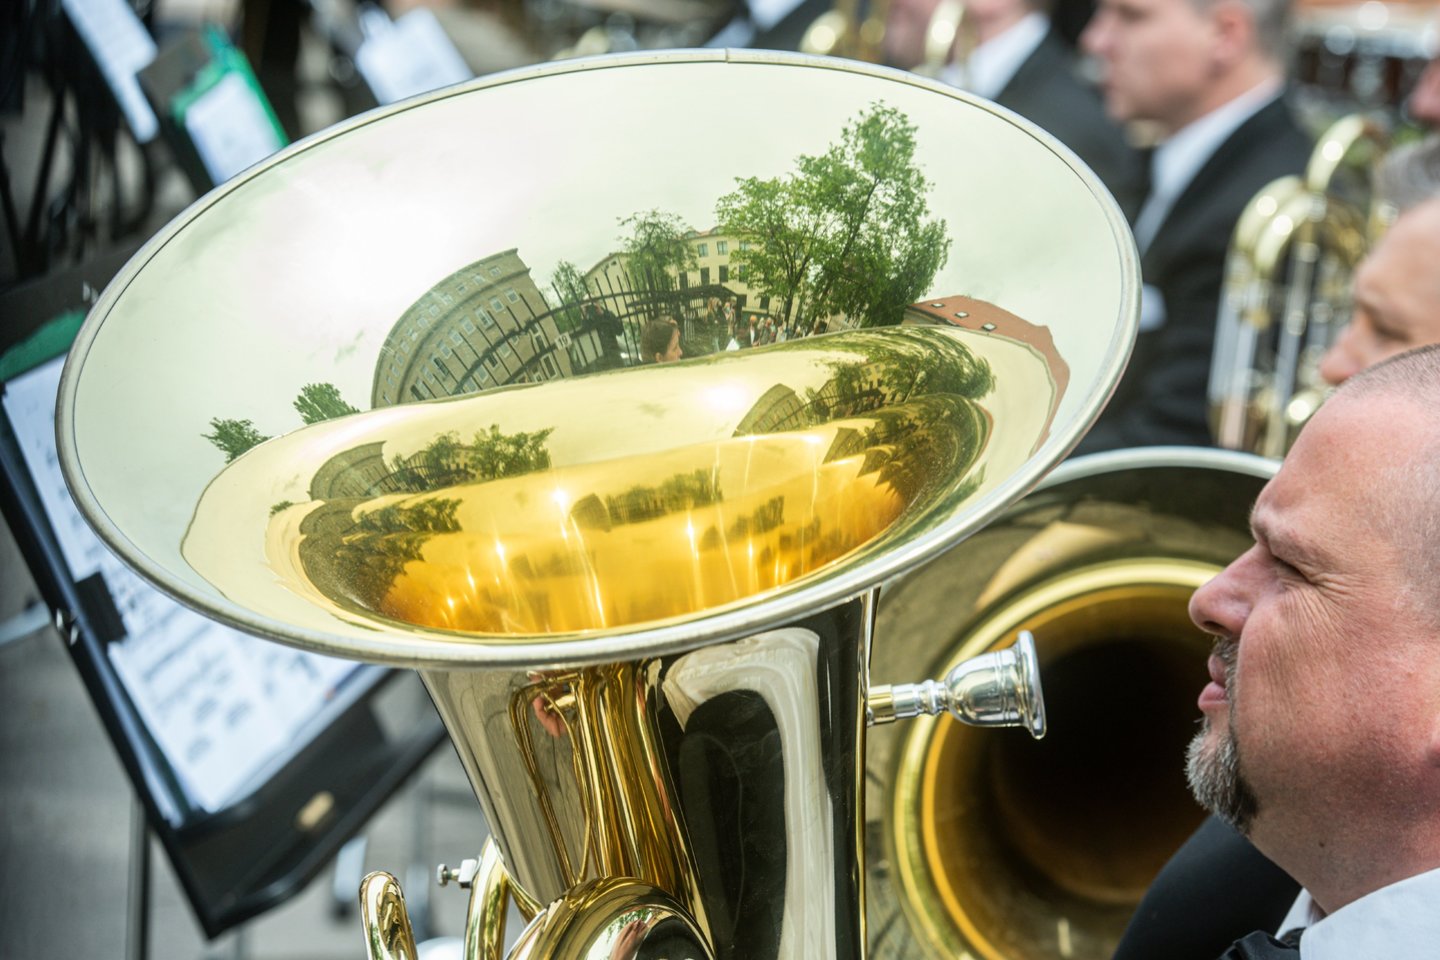  Valstybinis pučiamųjų instrumentų orkestras „Trimitas“ – universalus ir atviras naujovėms kolektyvas, atliekantis įvairių žanrų ir stilių muziką.<br> D.Matvejevo nuotr.